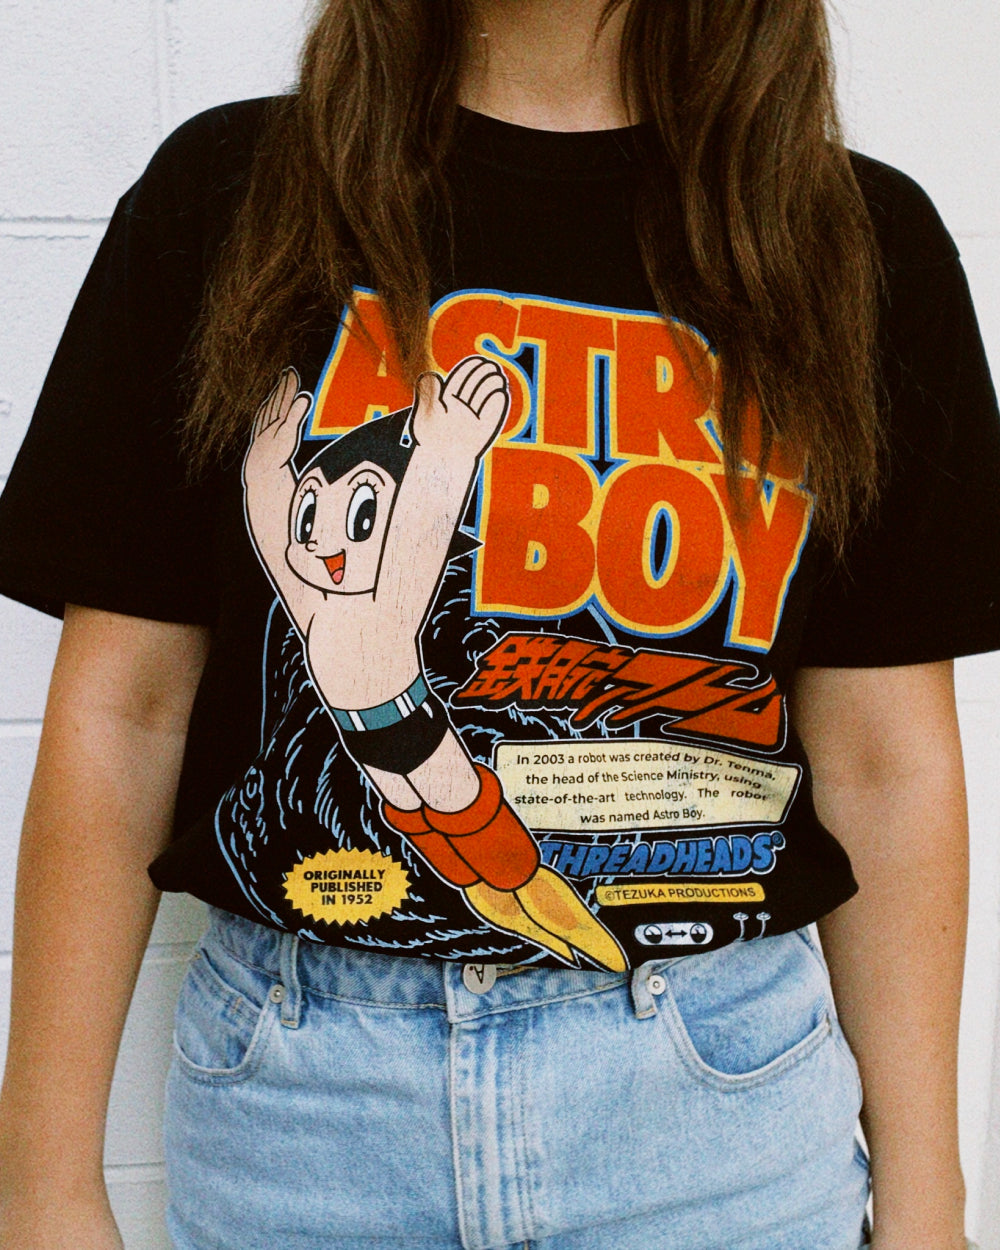 Astro Boy Vintage T-Shirt Australia Online #colour_black